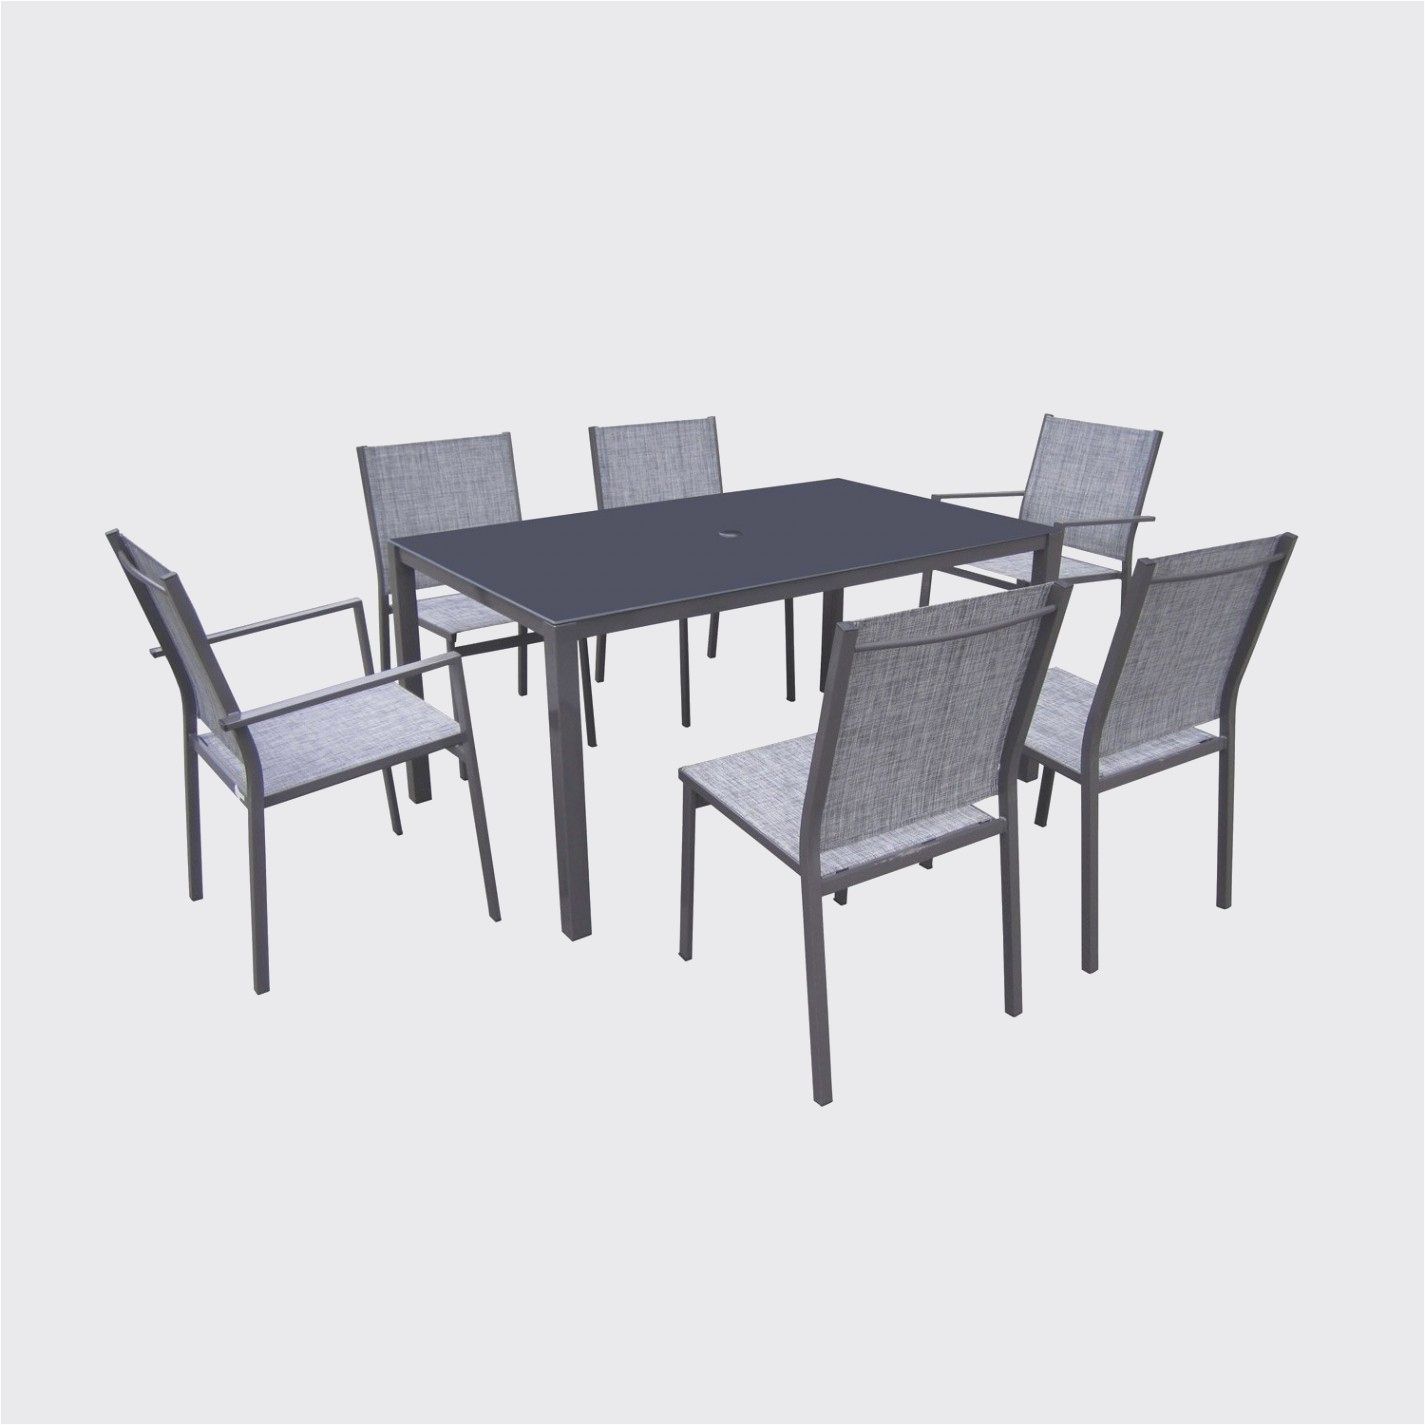 Table Et Fauteuil De Jardin Frais Table Et Chaise Pliante Table Et Chaise Pliante with Table